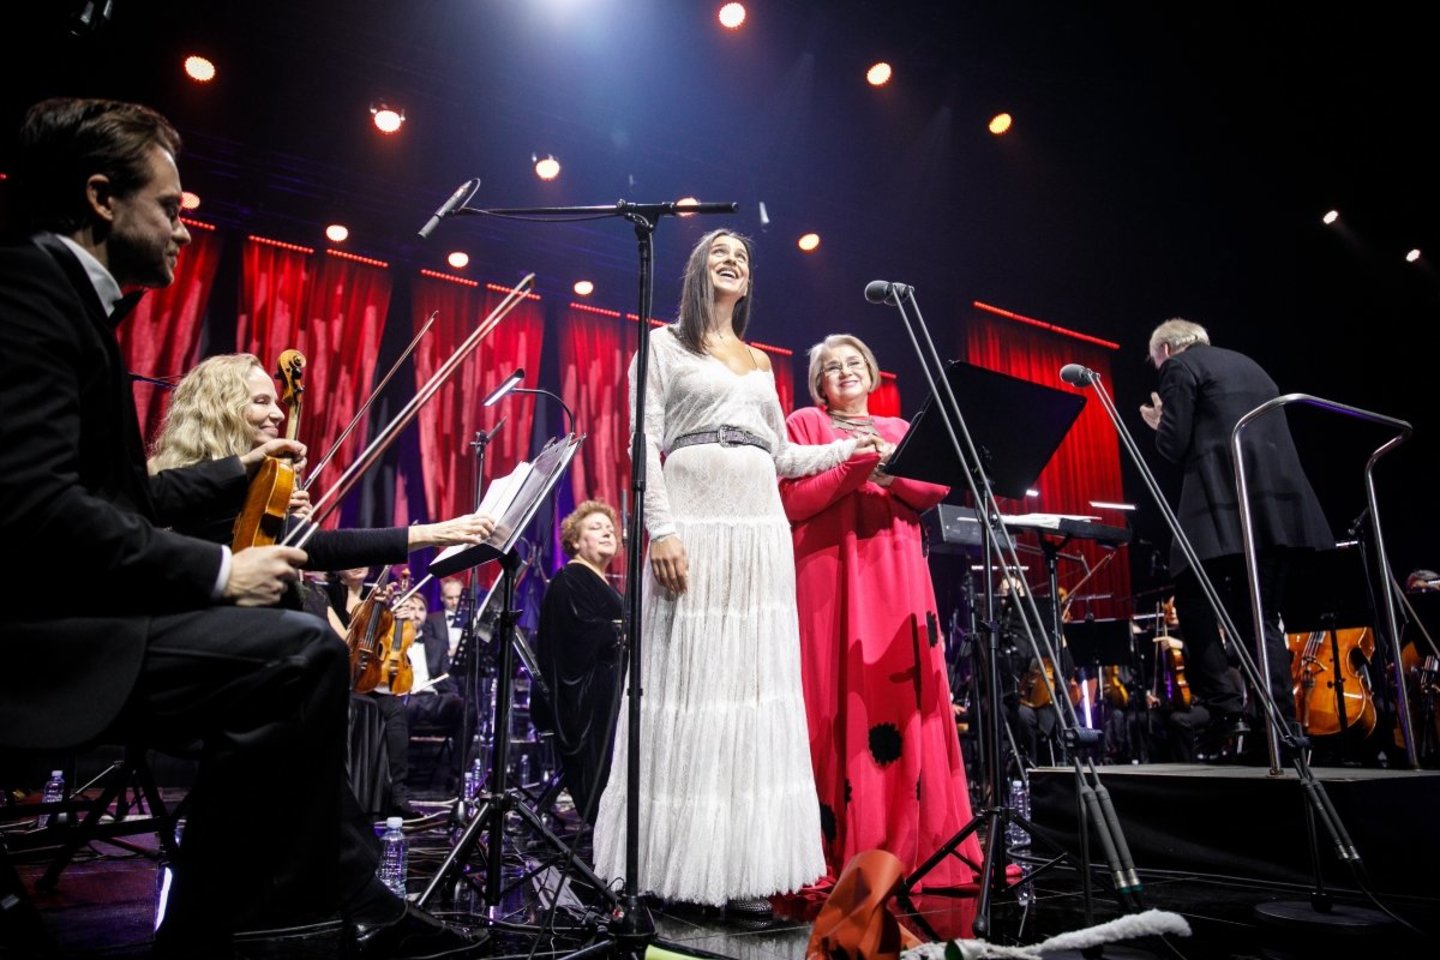  Naujųjų metų išvakarėse koncertą surengė mama ir duktė - I.Milkevičiūtė ir A.Grigorian.<br> Rengėjų nuotr.